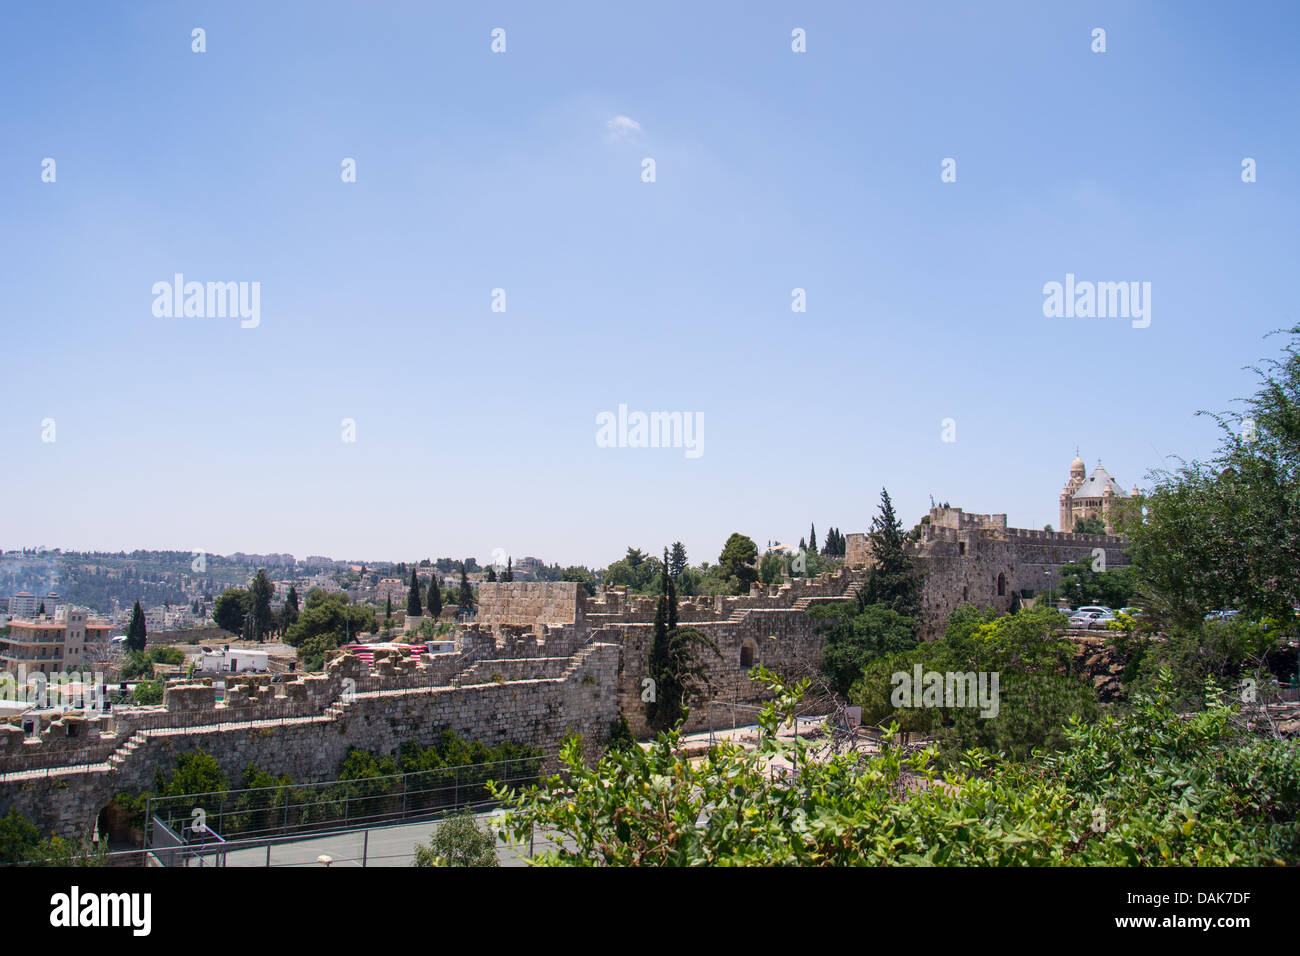 Vista de la muralla de la ciudad vieja de Jerusalén. Foto de stock